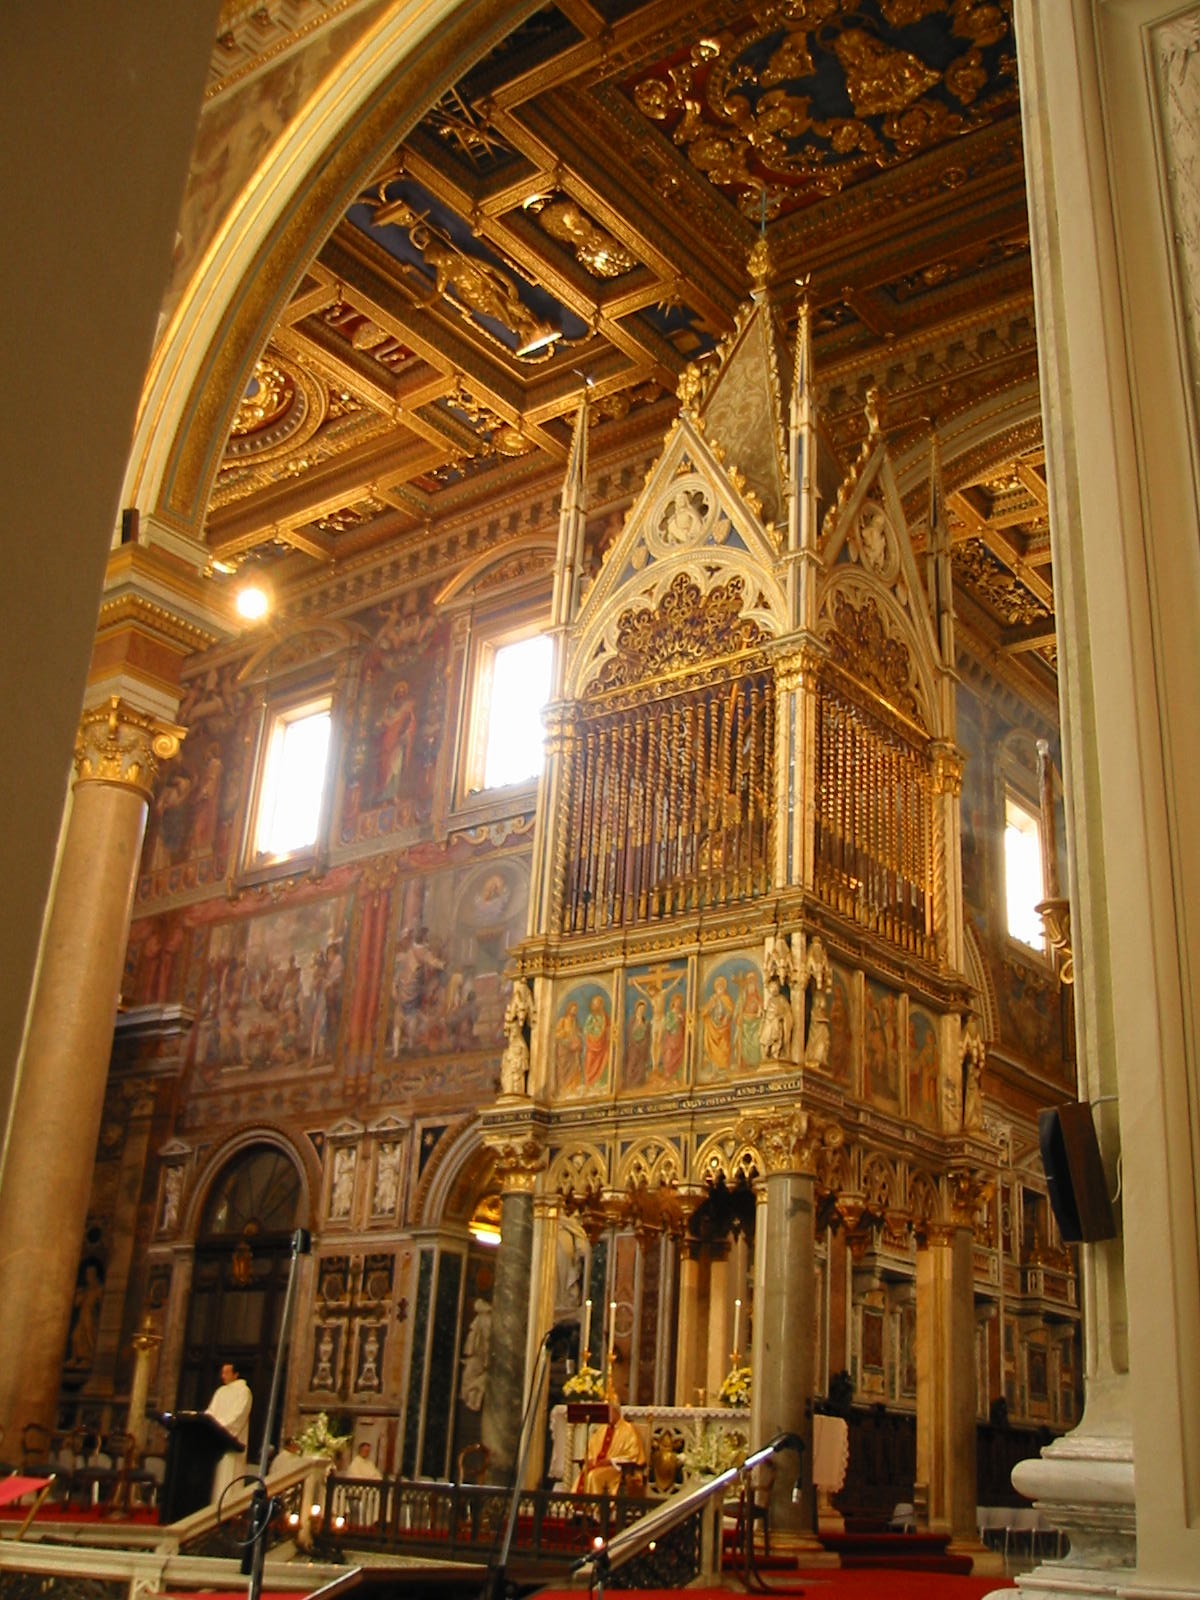 San Giovanni Laterano (St. John at Lateran)